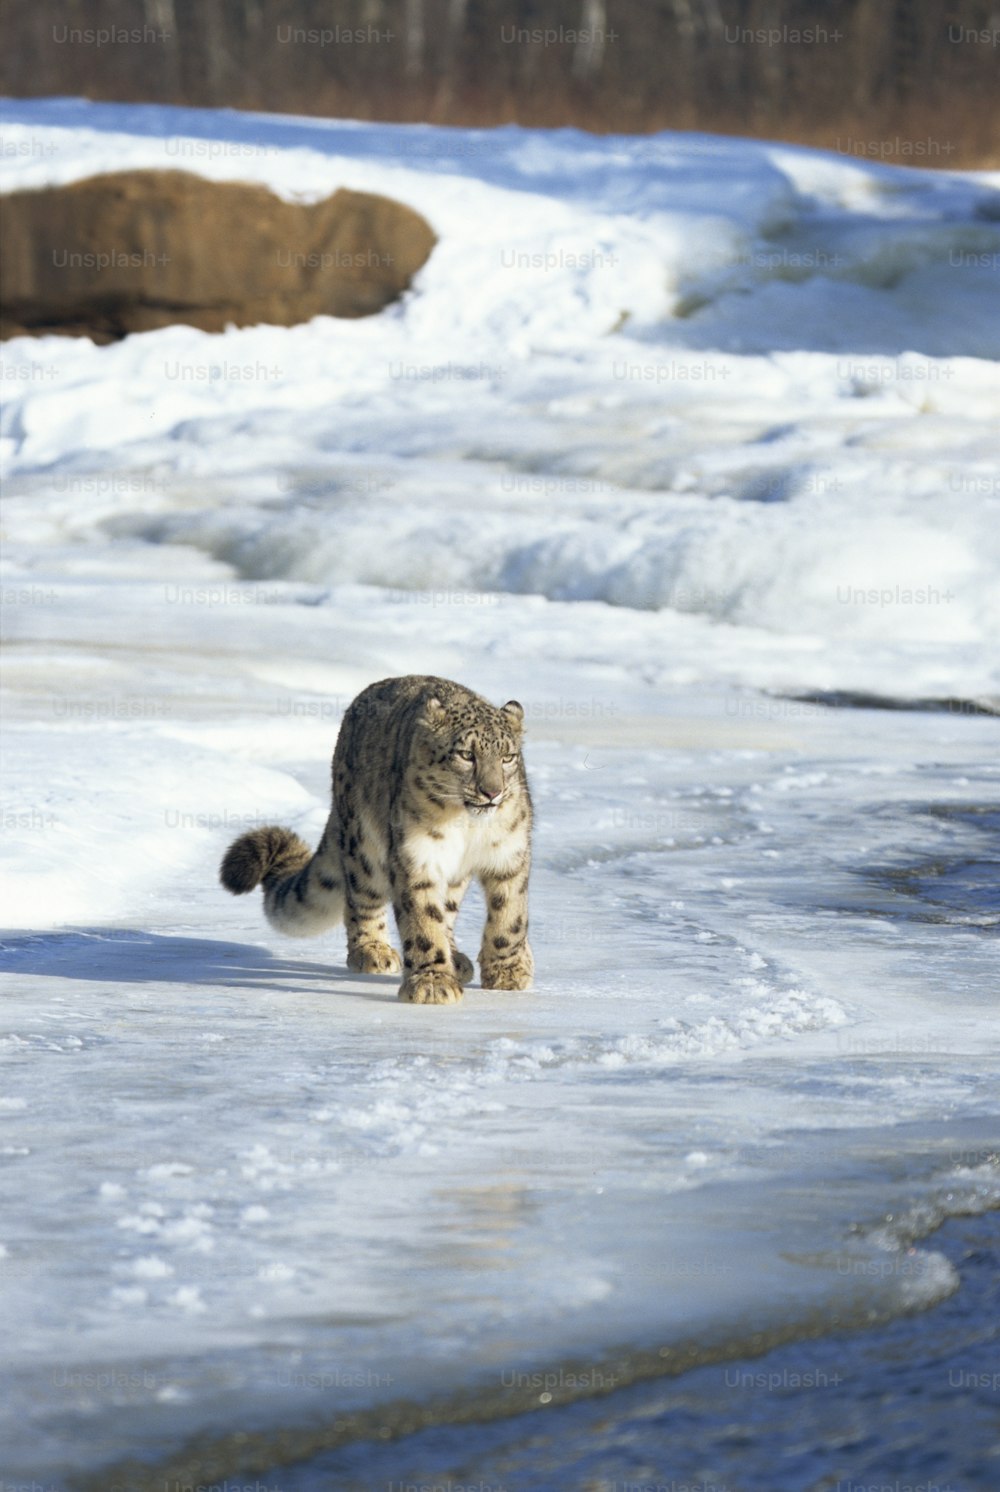 Un gato caminando por un suelo cubierto de nieve